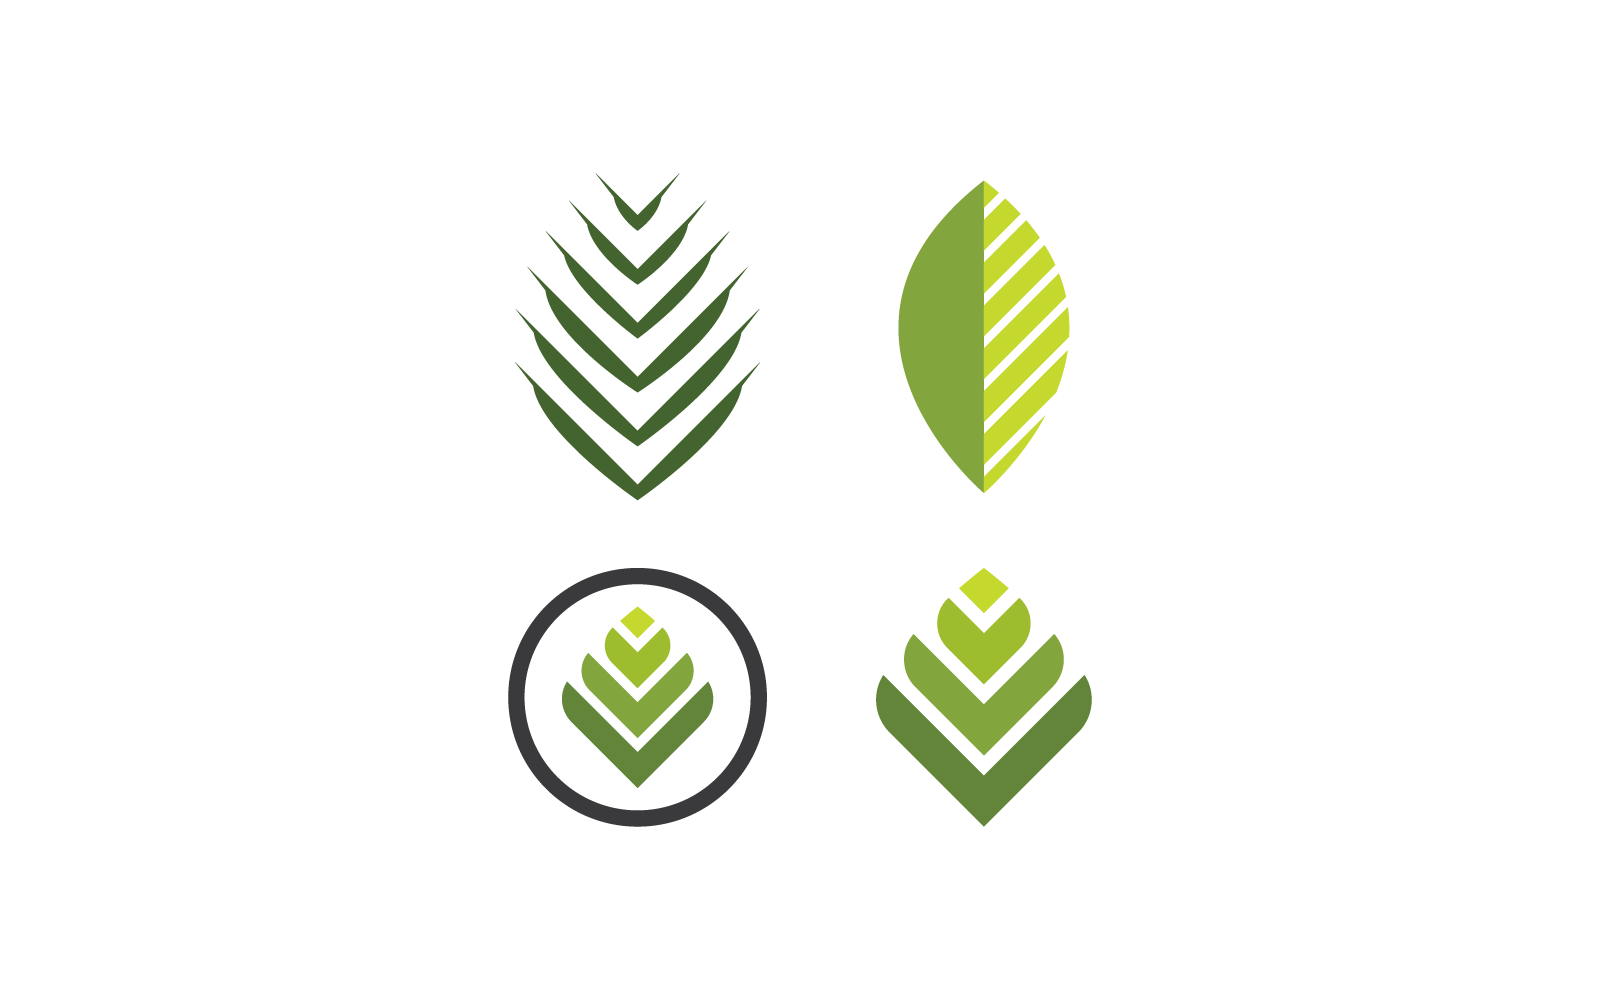 Palm tree leaf illustration logo vector design